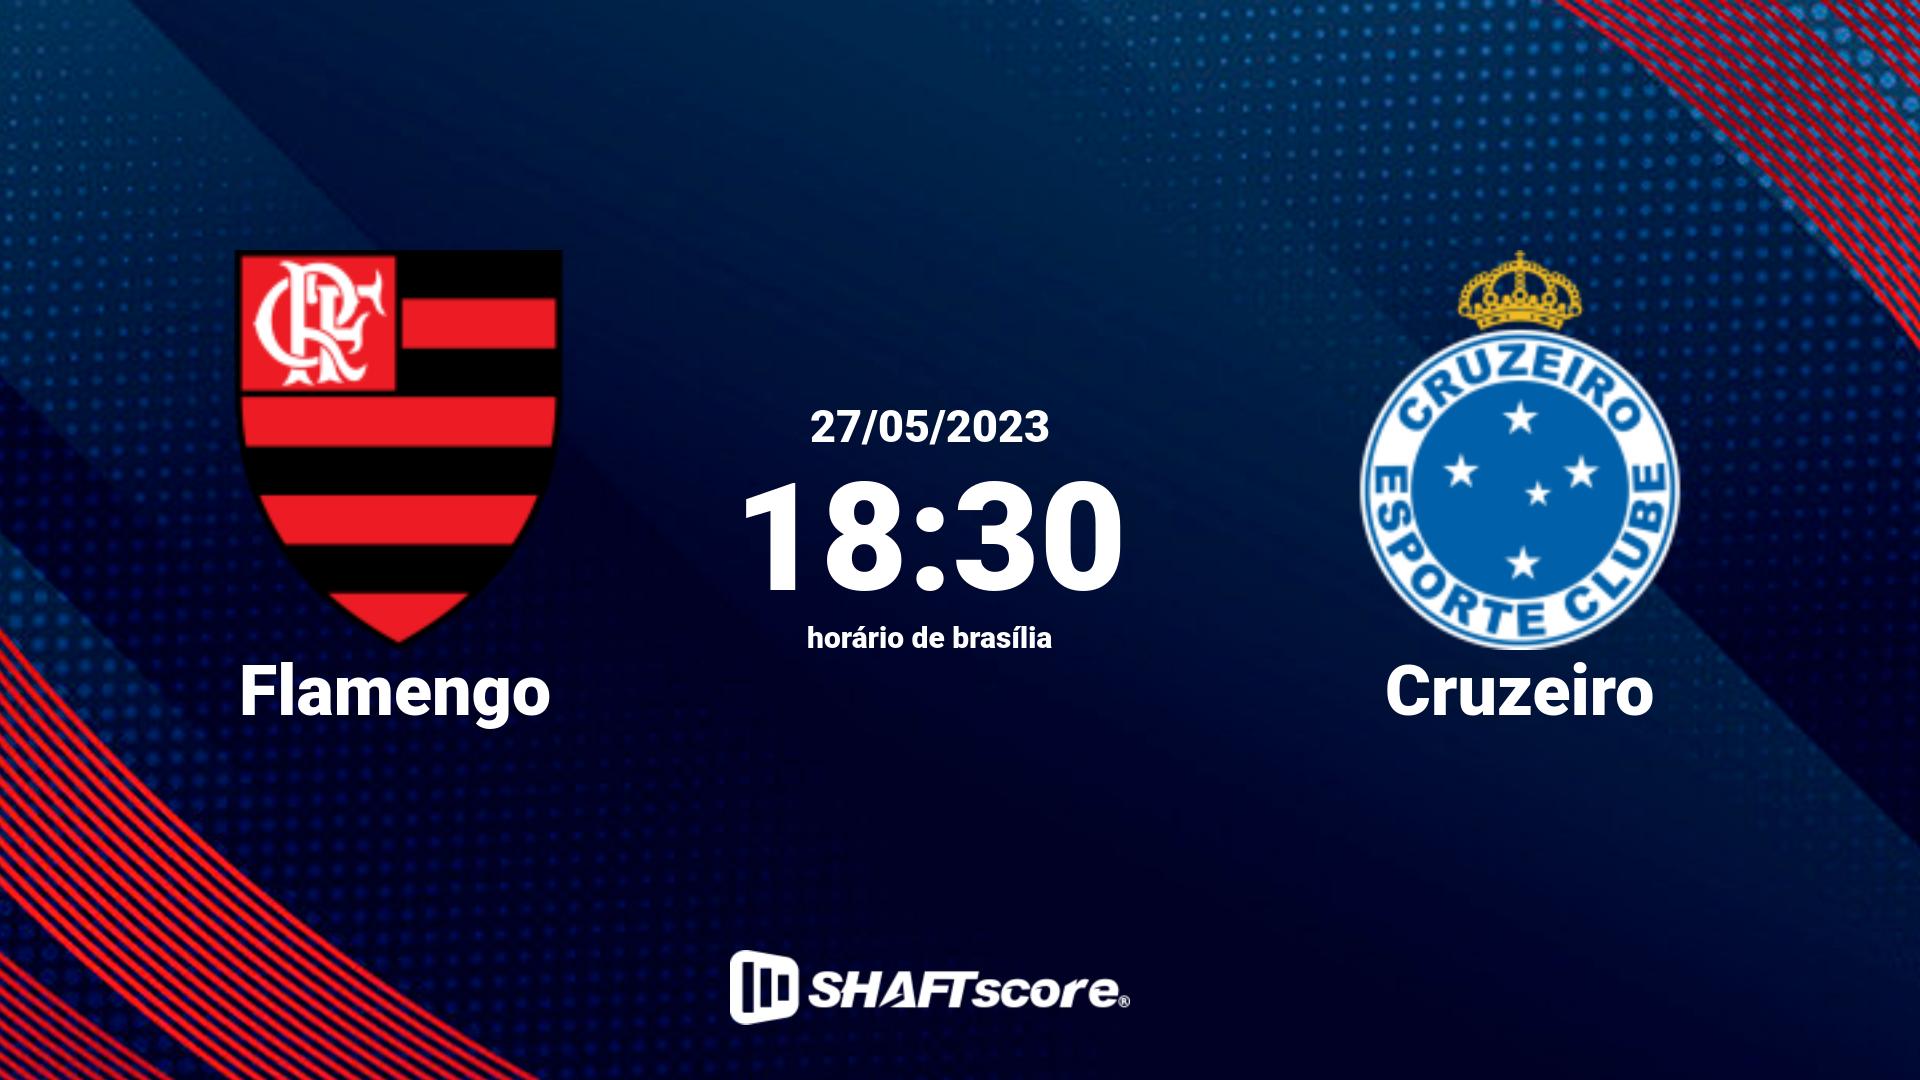 Estatísticas do jogo Flamengo vs Cruzeiro 27.05 18:30